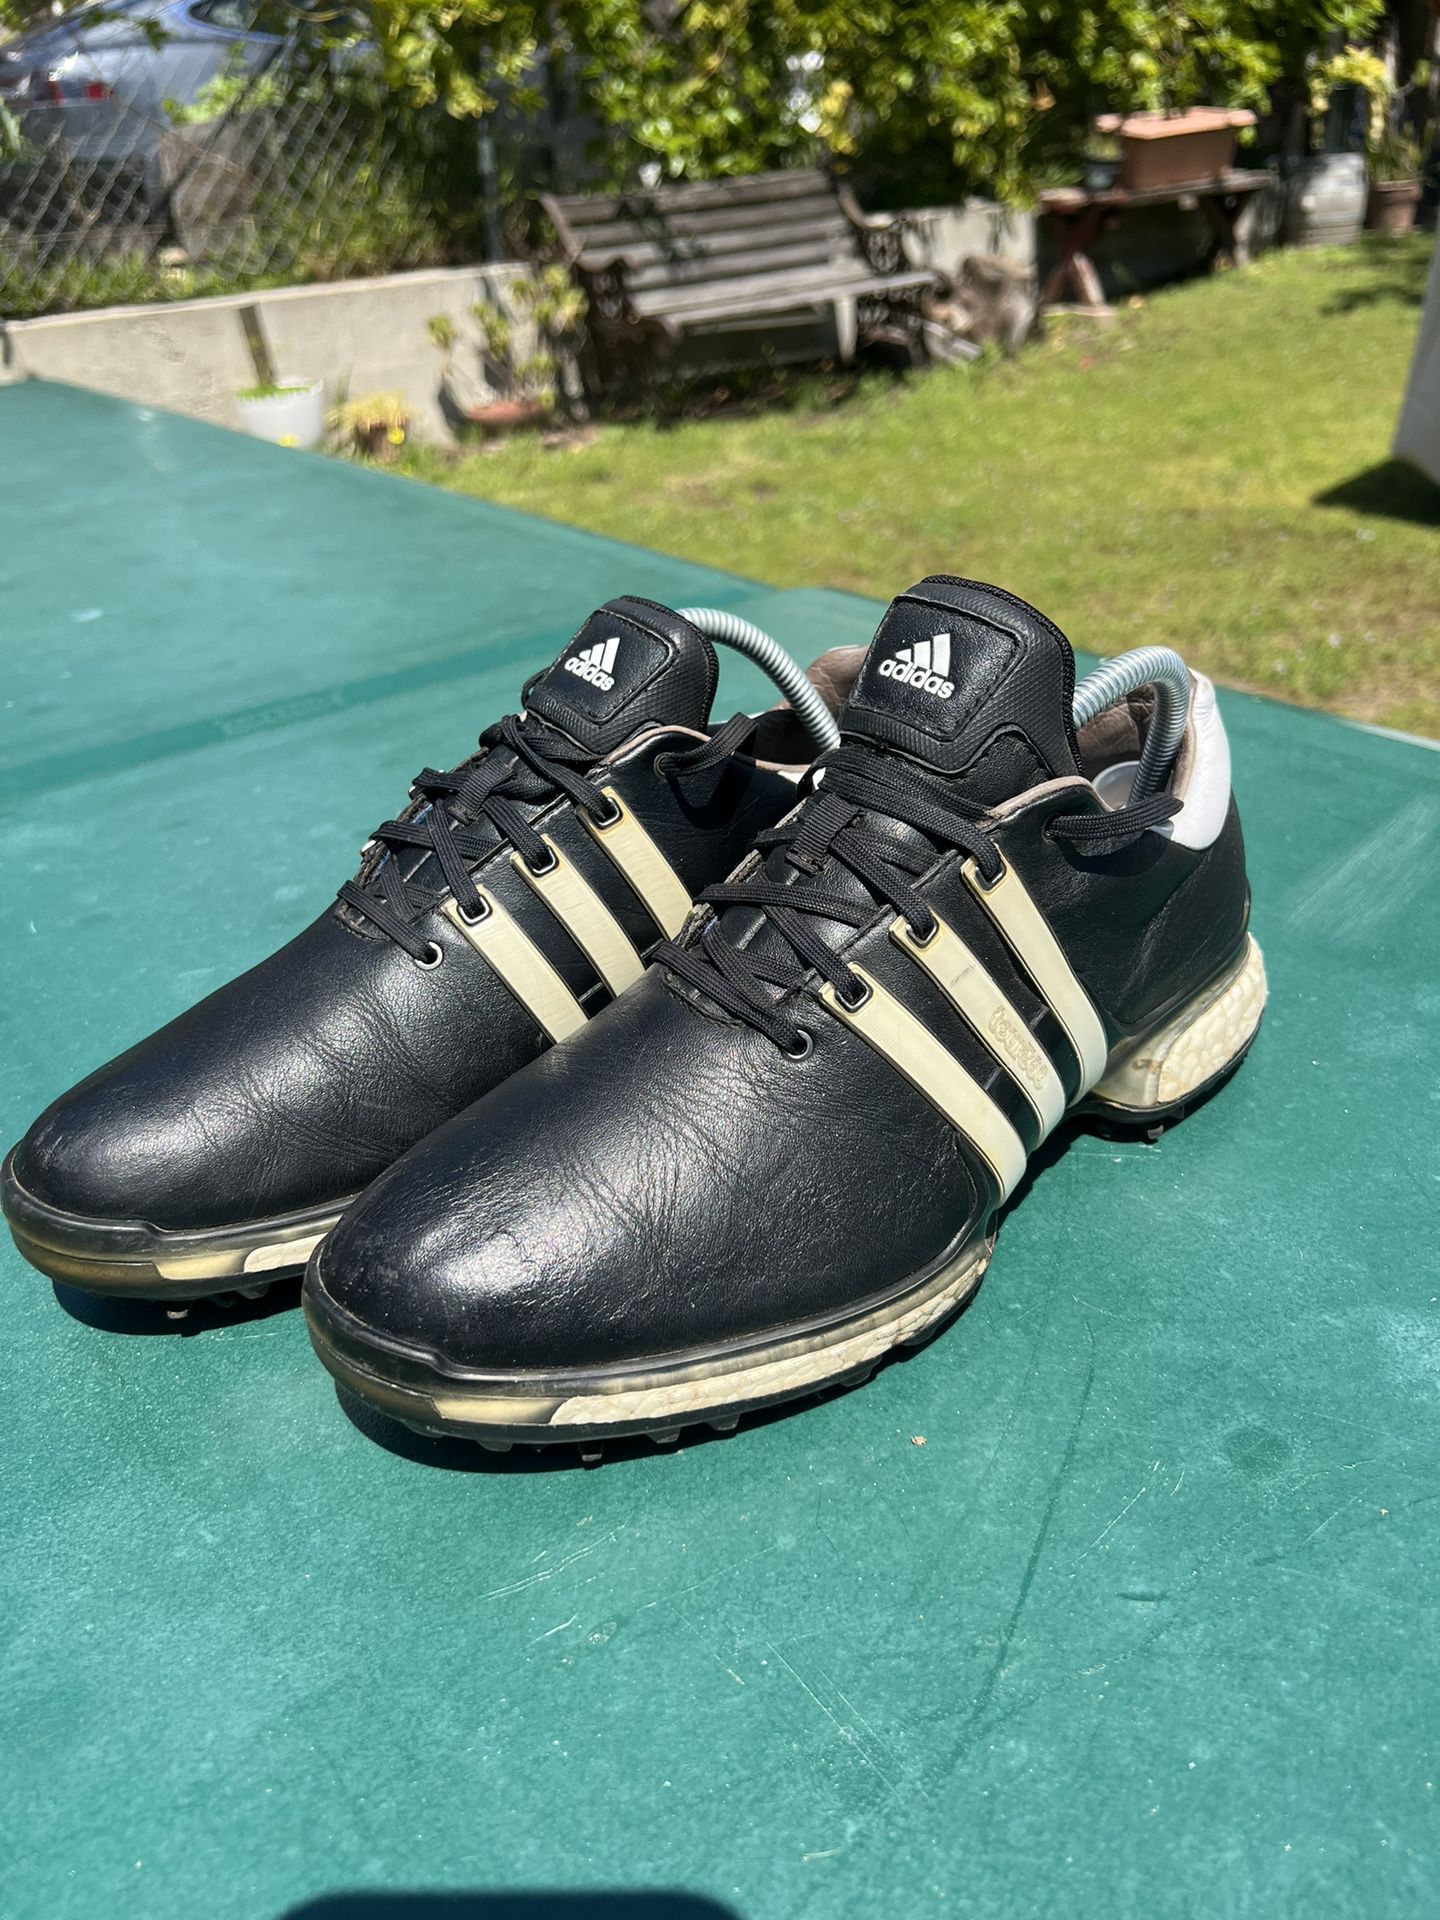 Adidas Tour360 Golf Shoes